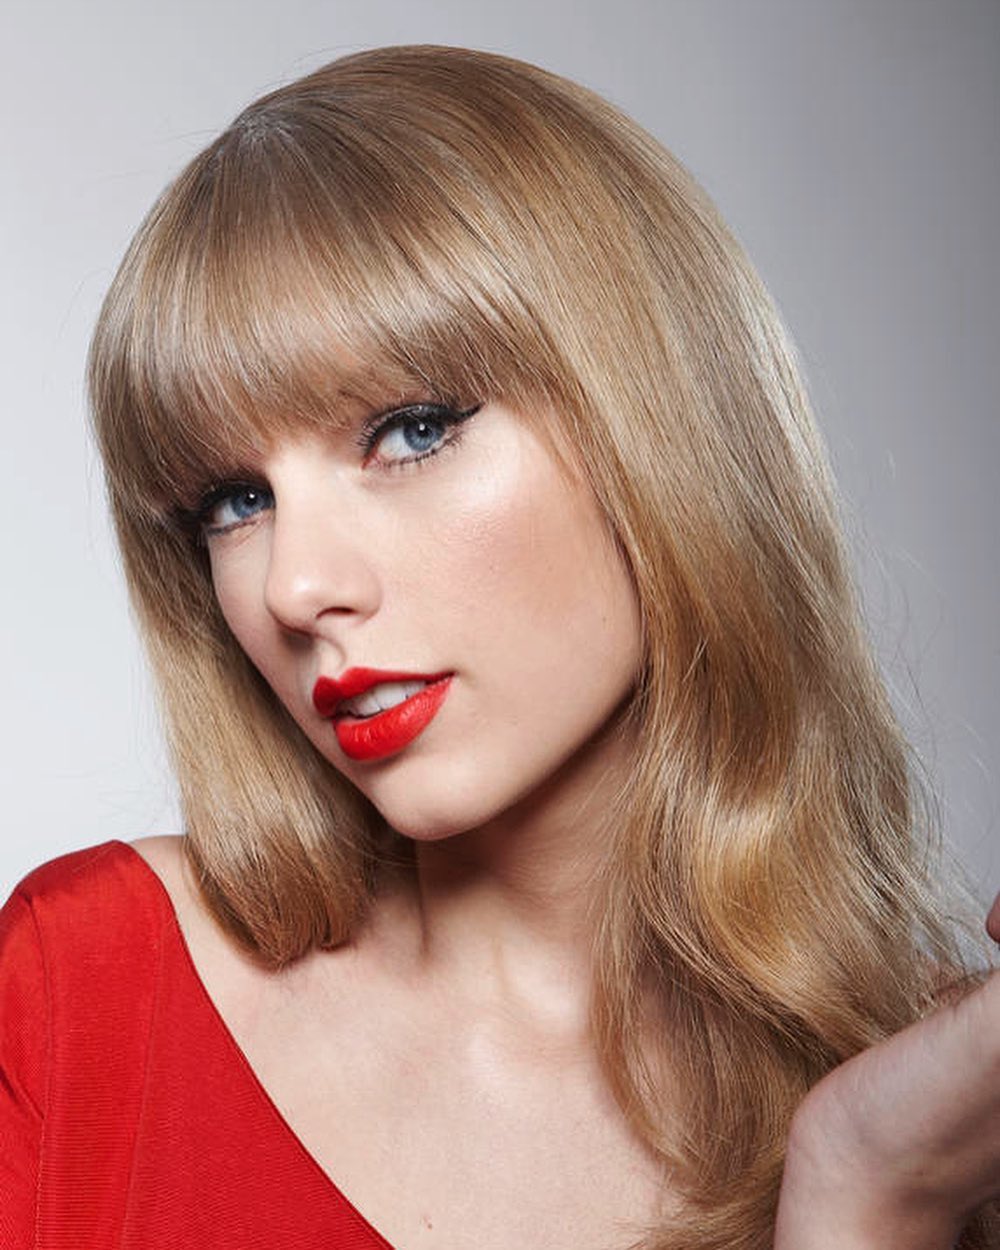 Taylor Swift’s Beauty Secret